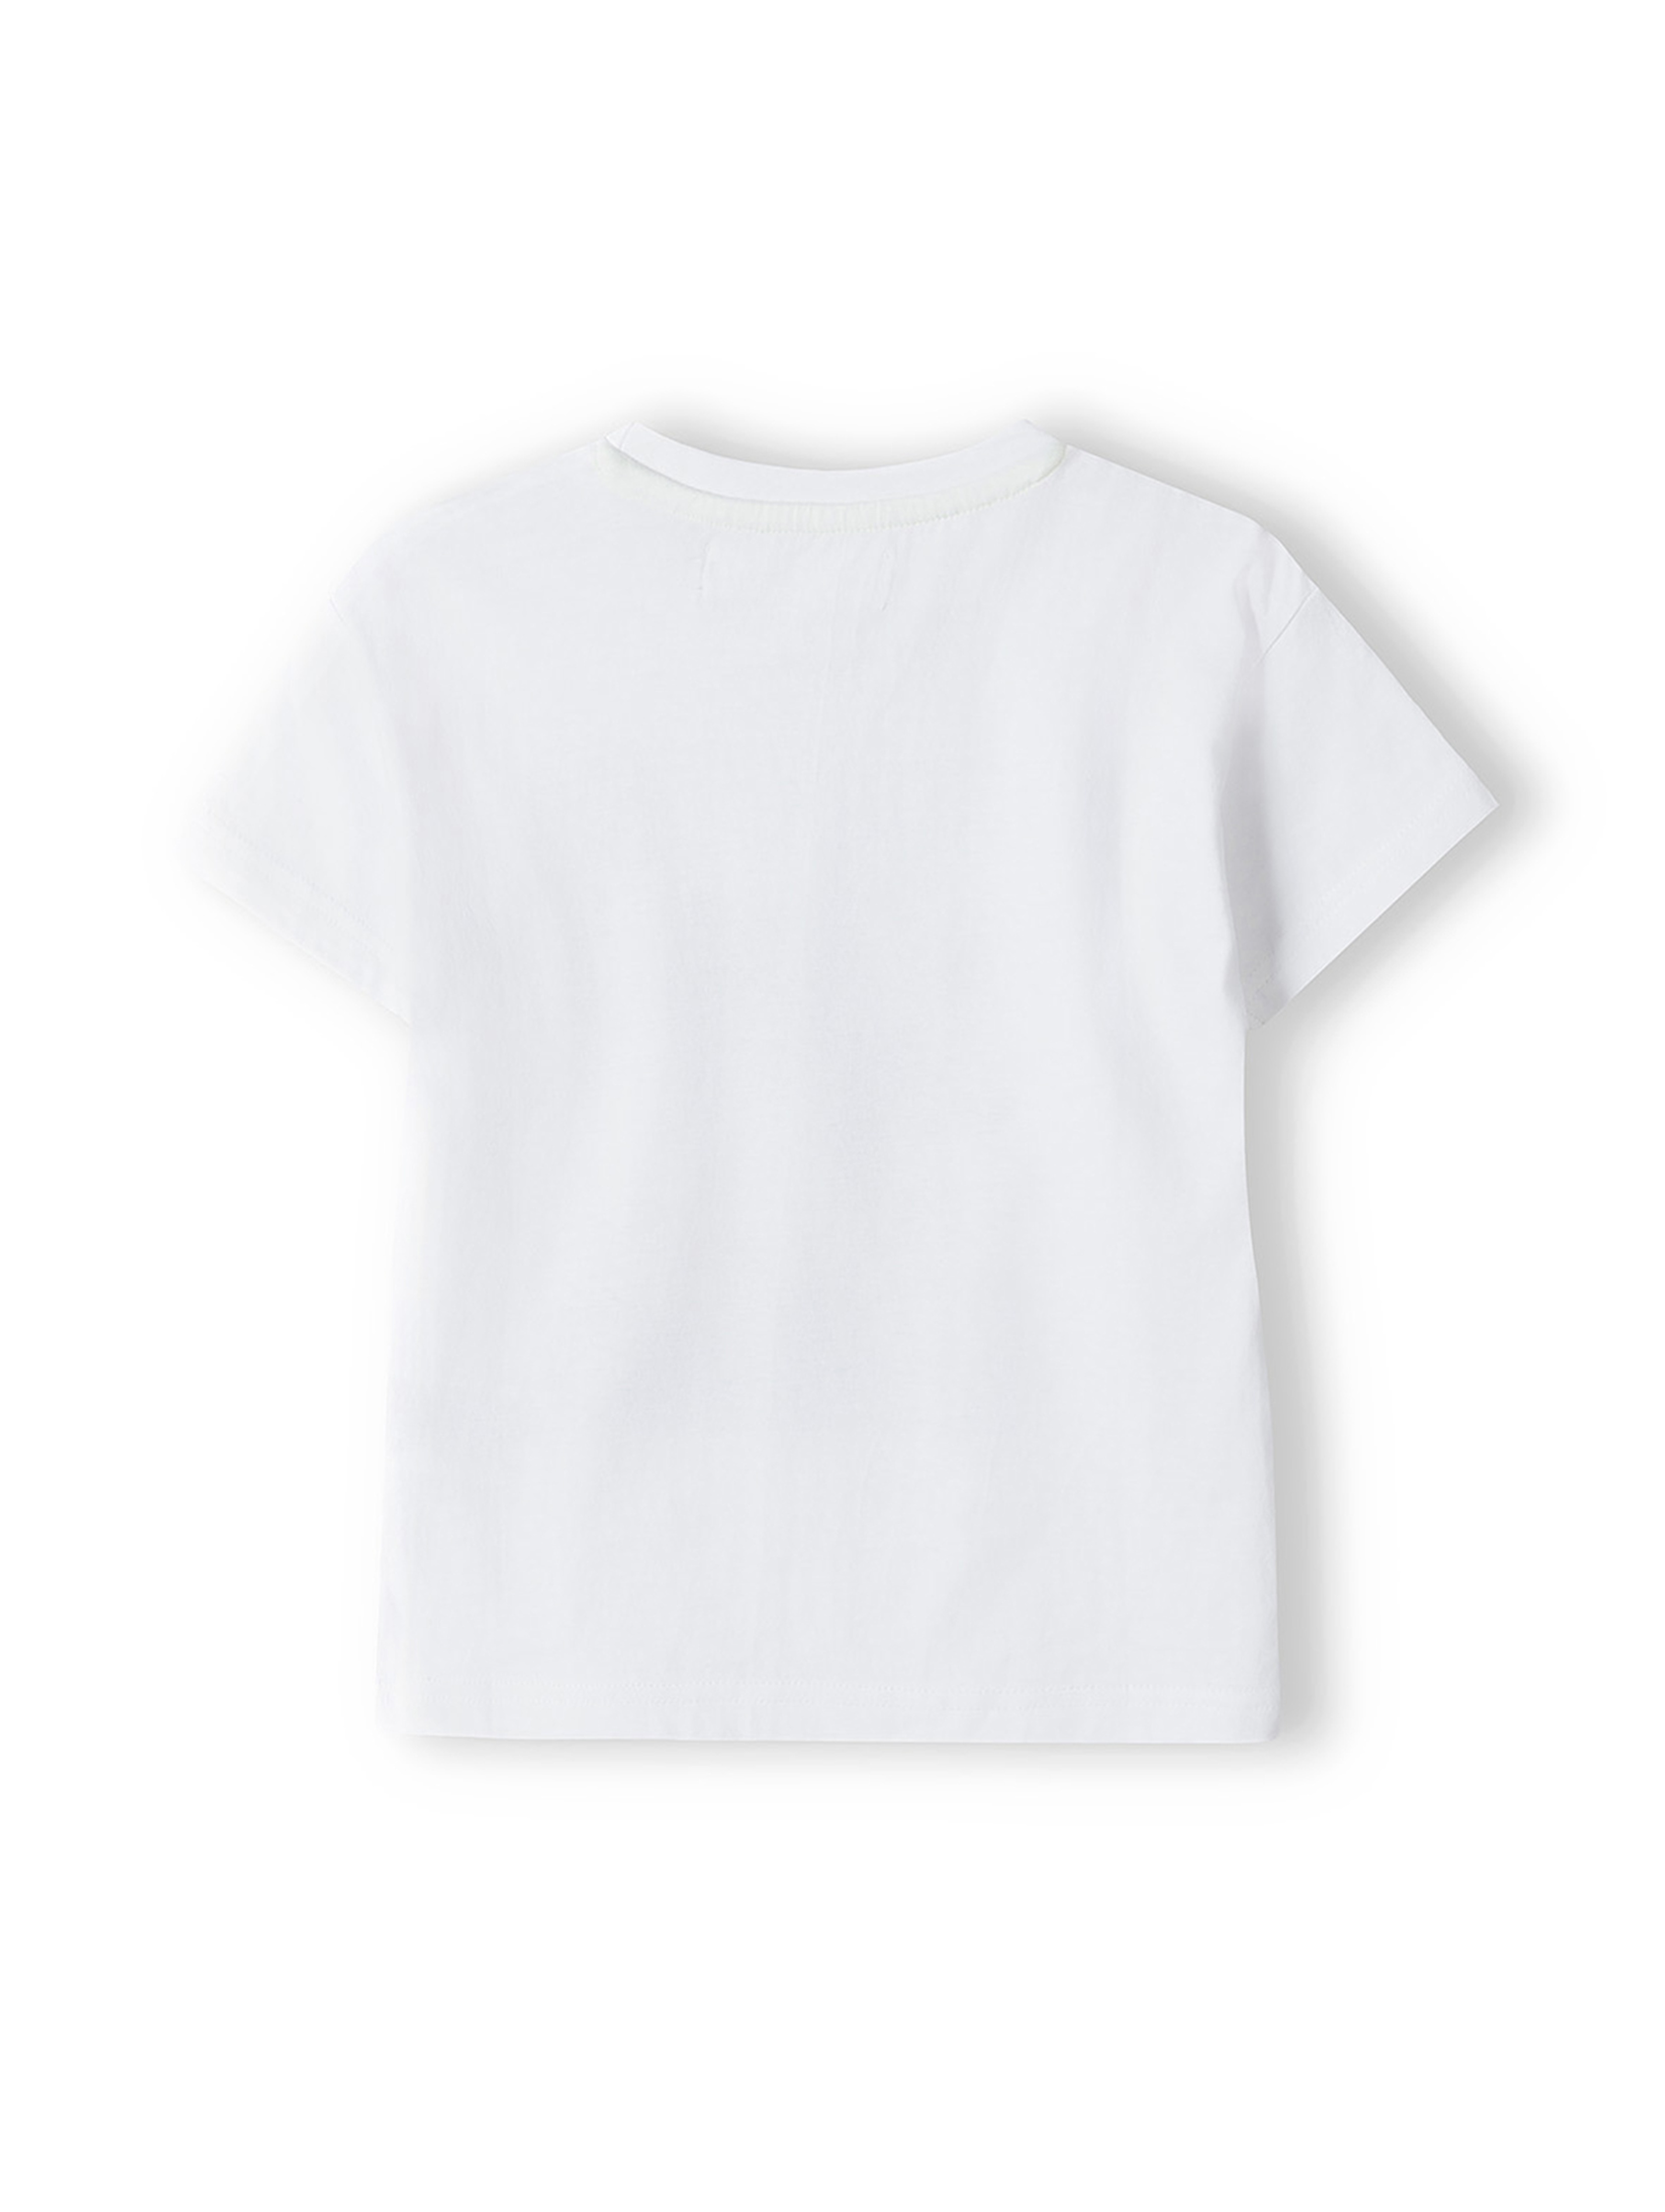 Komplet dla dziewczynki - biały t-shirt + krótkie spodenki